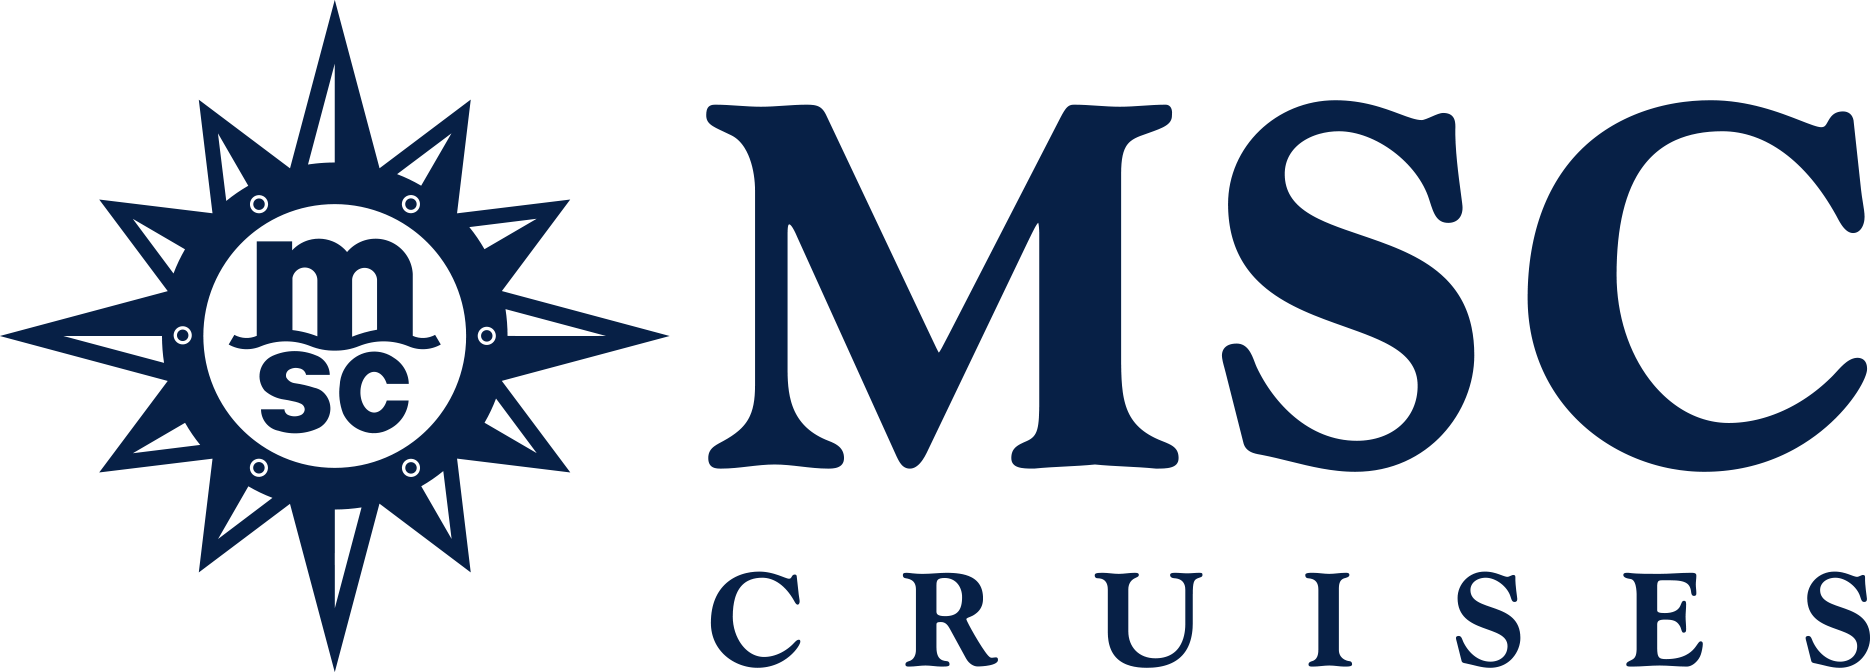 MSC Virtuosa Reederei Logo